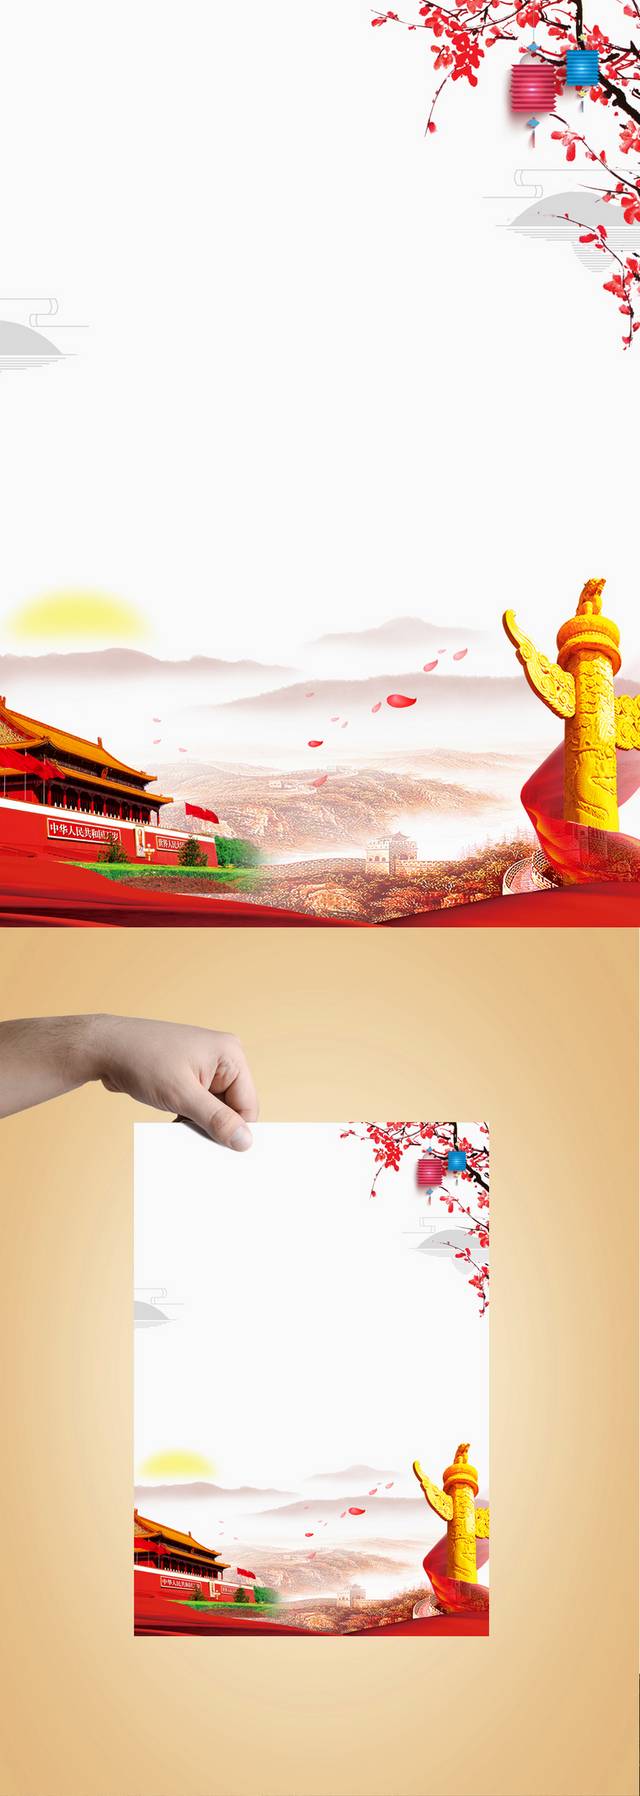 中国风红色背景PSD模板